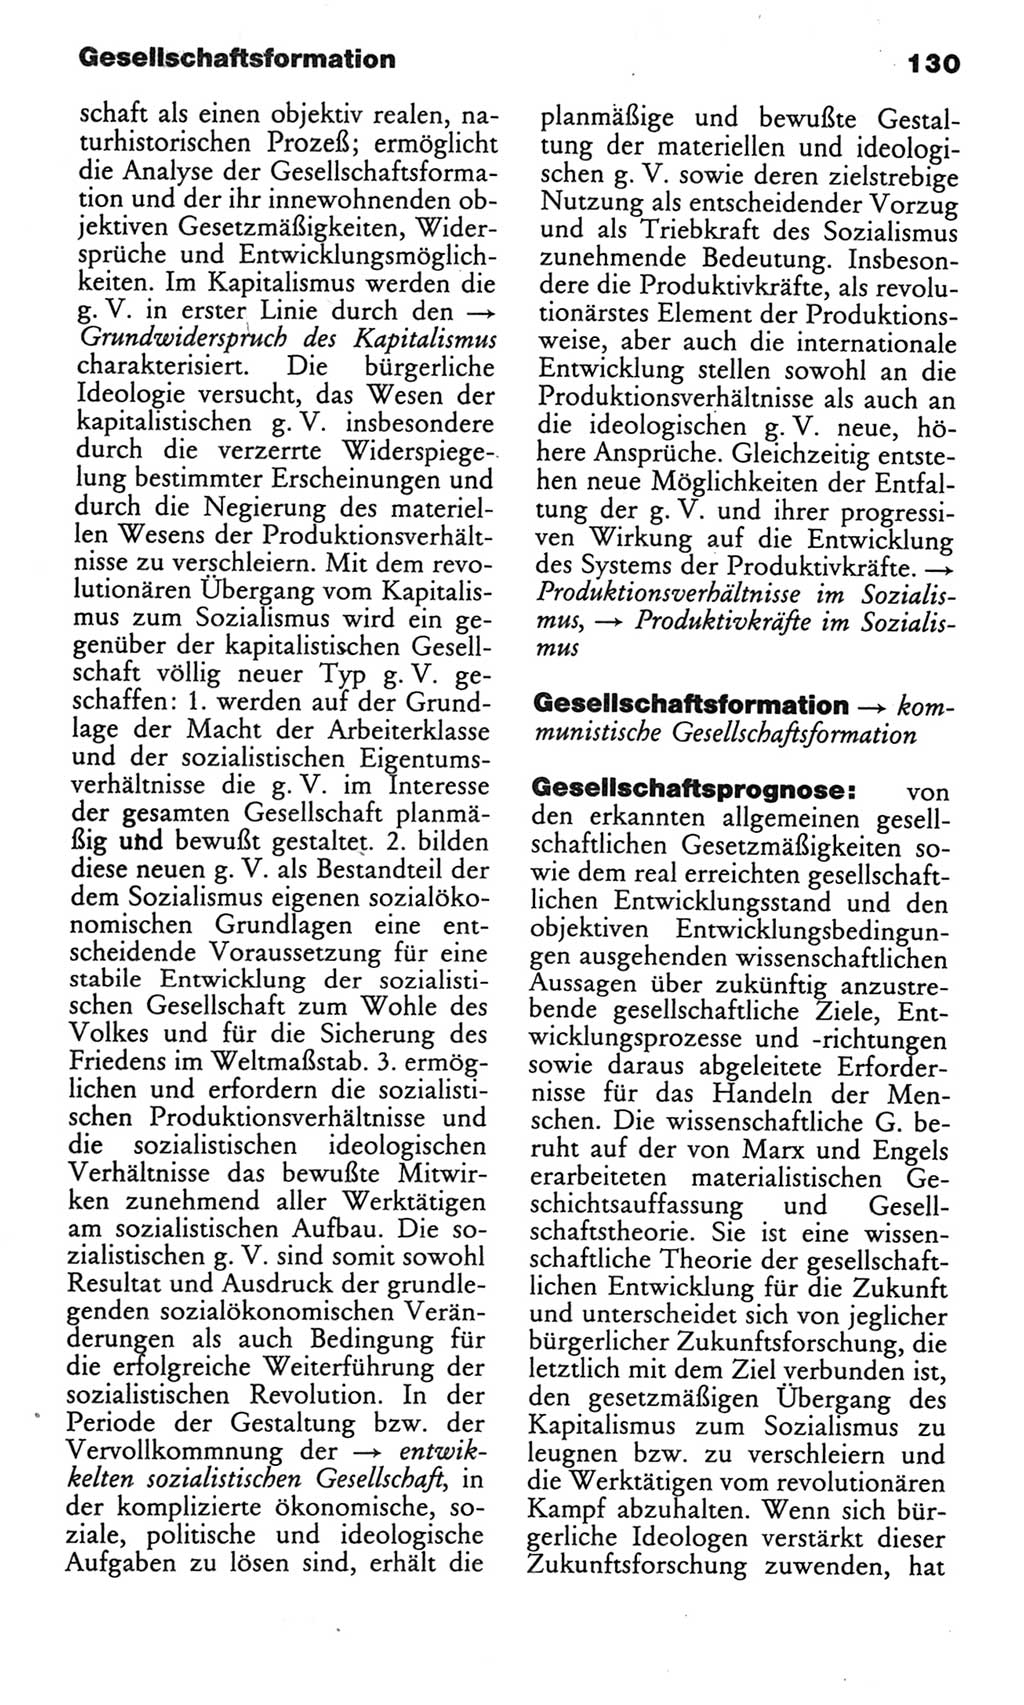 Wörterbuch des wissenschaftlichen Kommunismus [Deutsche Demokratische Republik (DDR)] 1982, Seite 130 (Wb. wiss. Komm. DDR 1982, S. 130)